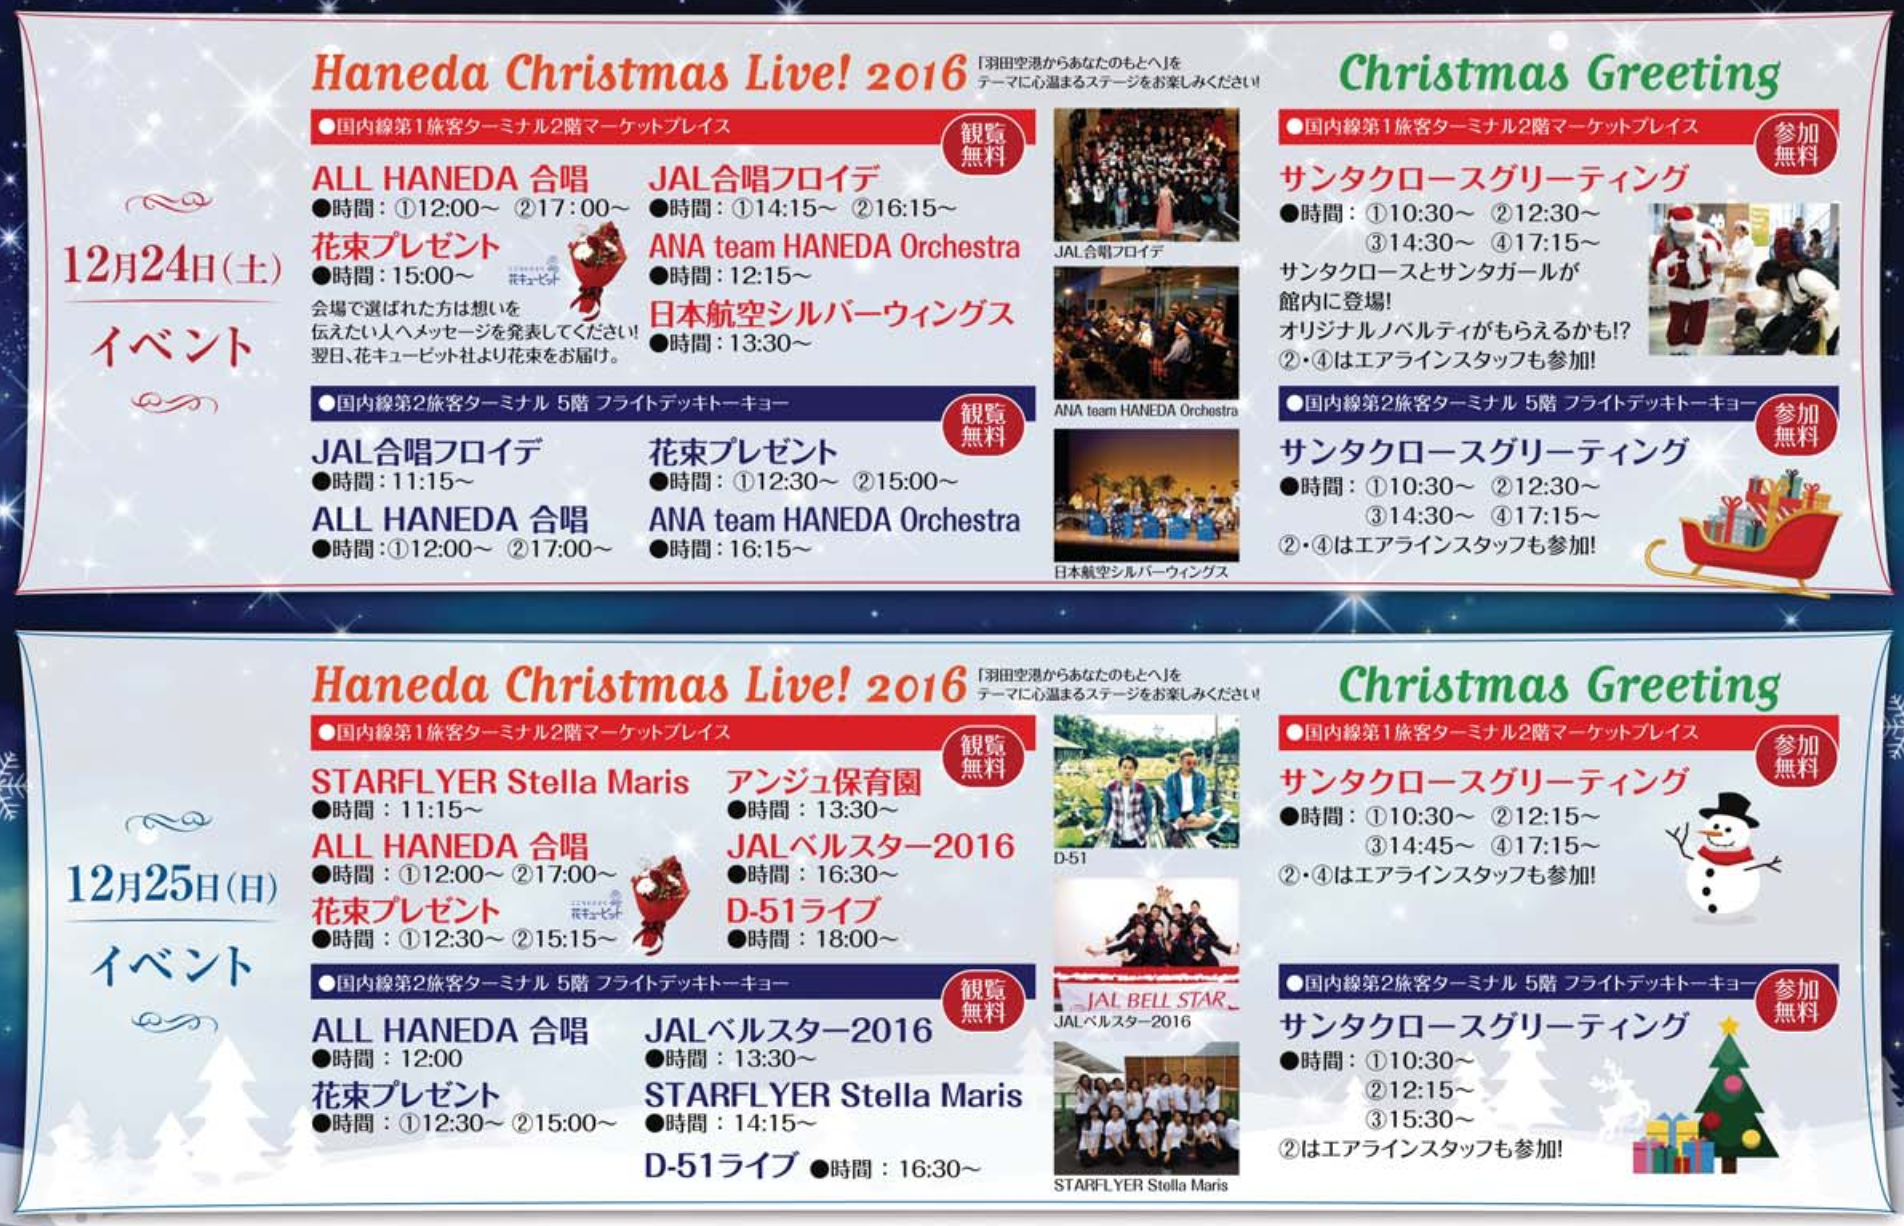 haneda2016christmas2.png